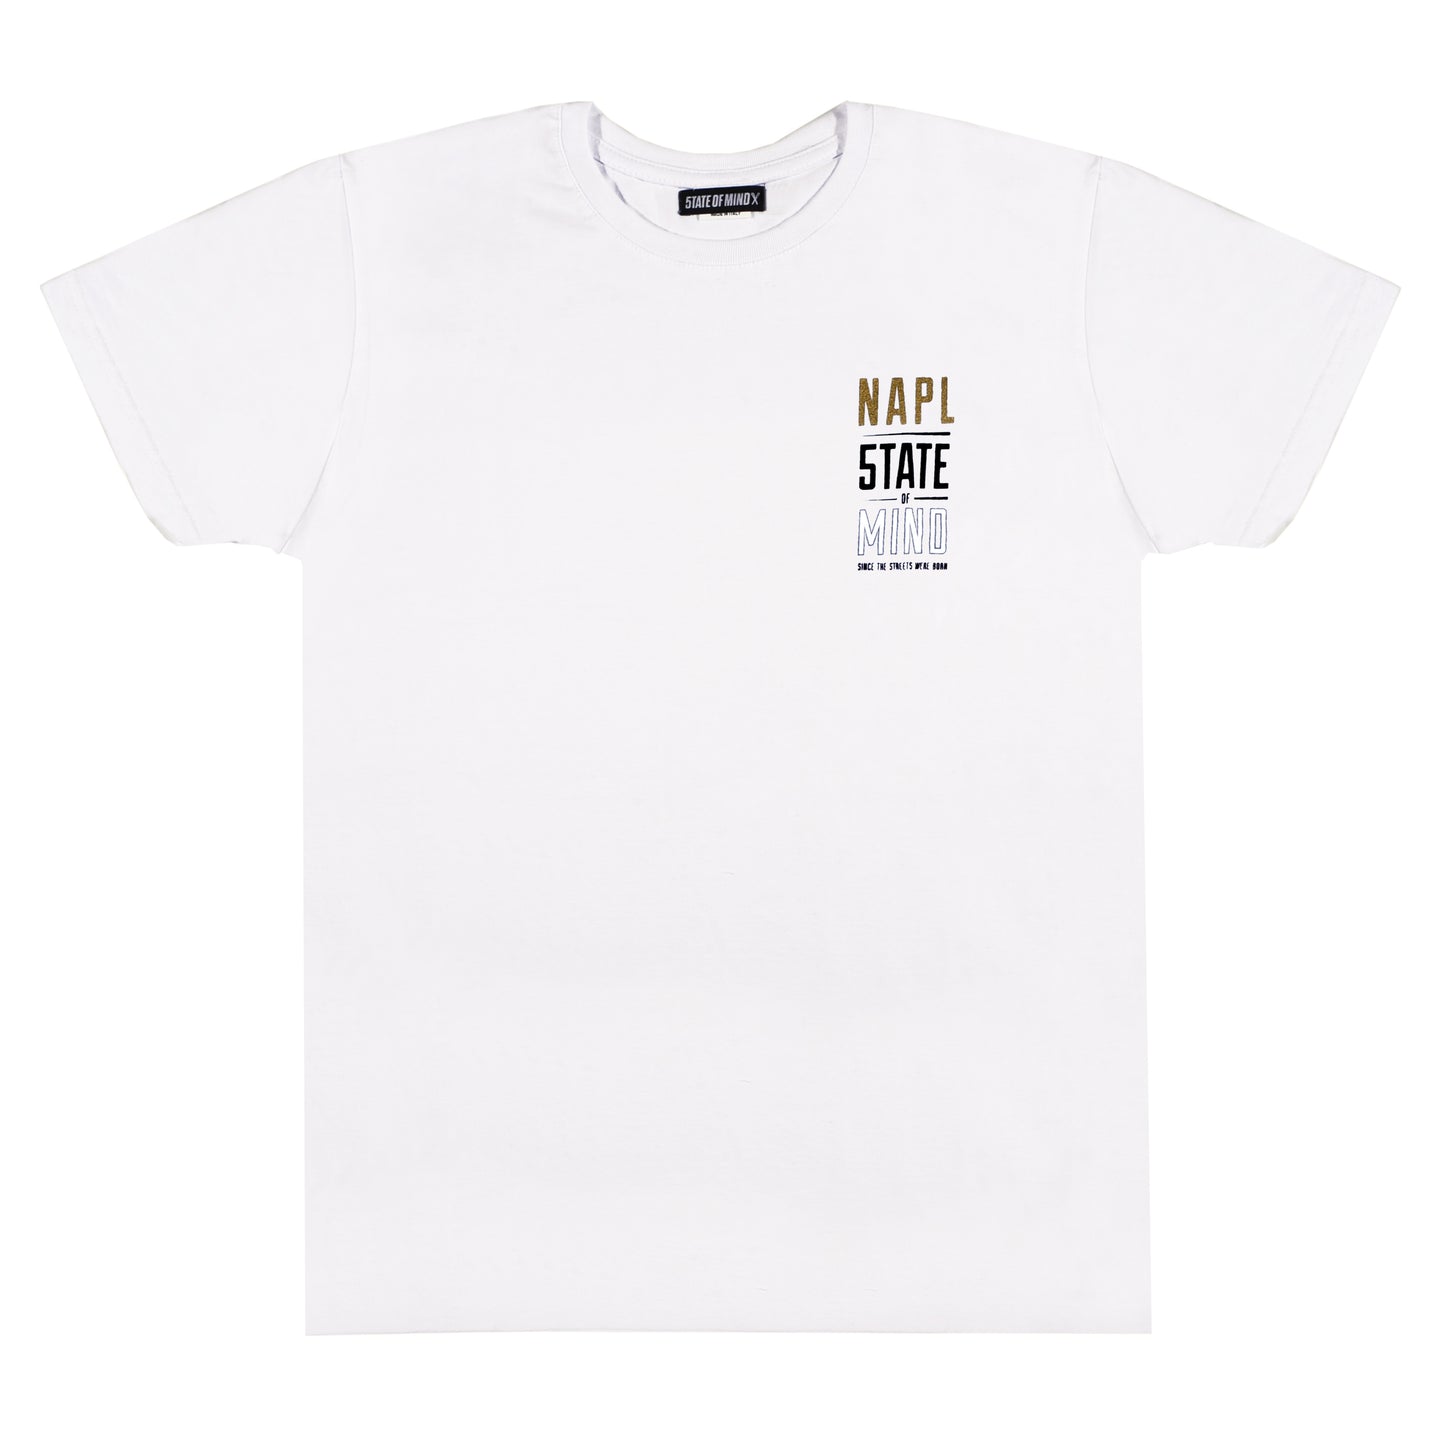 "NAPL CELEBRATION" gold & reflective white t-shirt